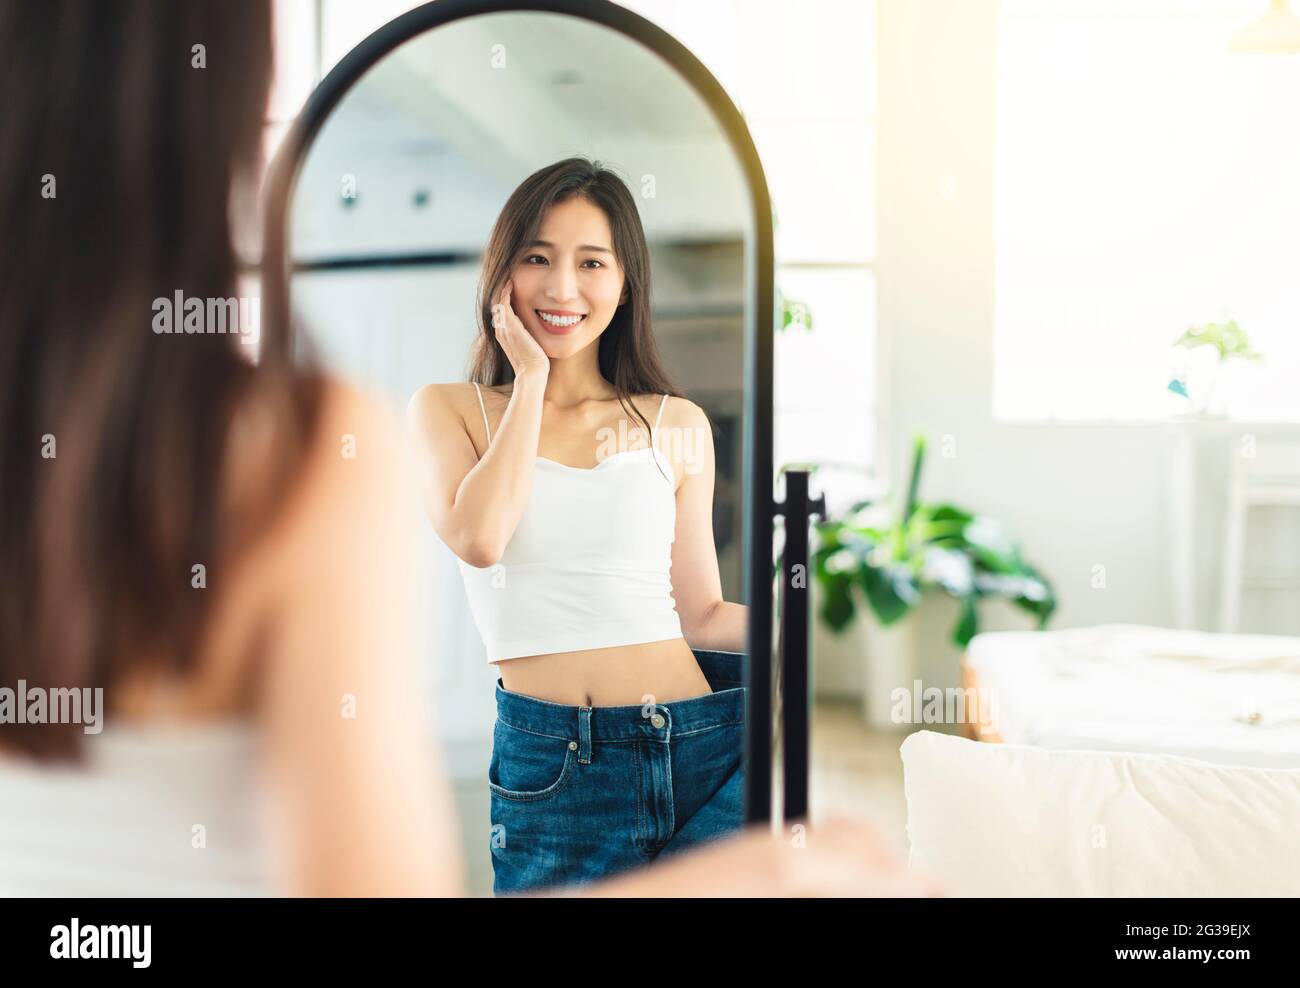 Die junge Frau, die vor dem Abnehmen große Jeans trägt und die Figur vor dem Spiegel anschaut, ist sehr glücklich, dass sie erfolgreich abgenommen hat Stockfoto